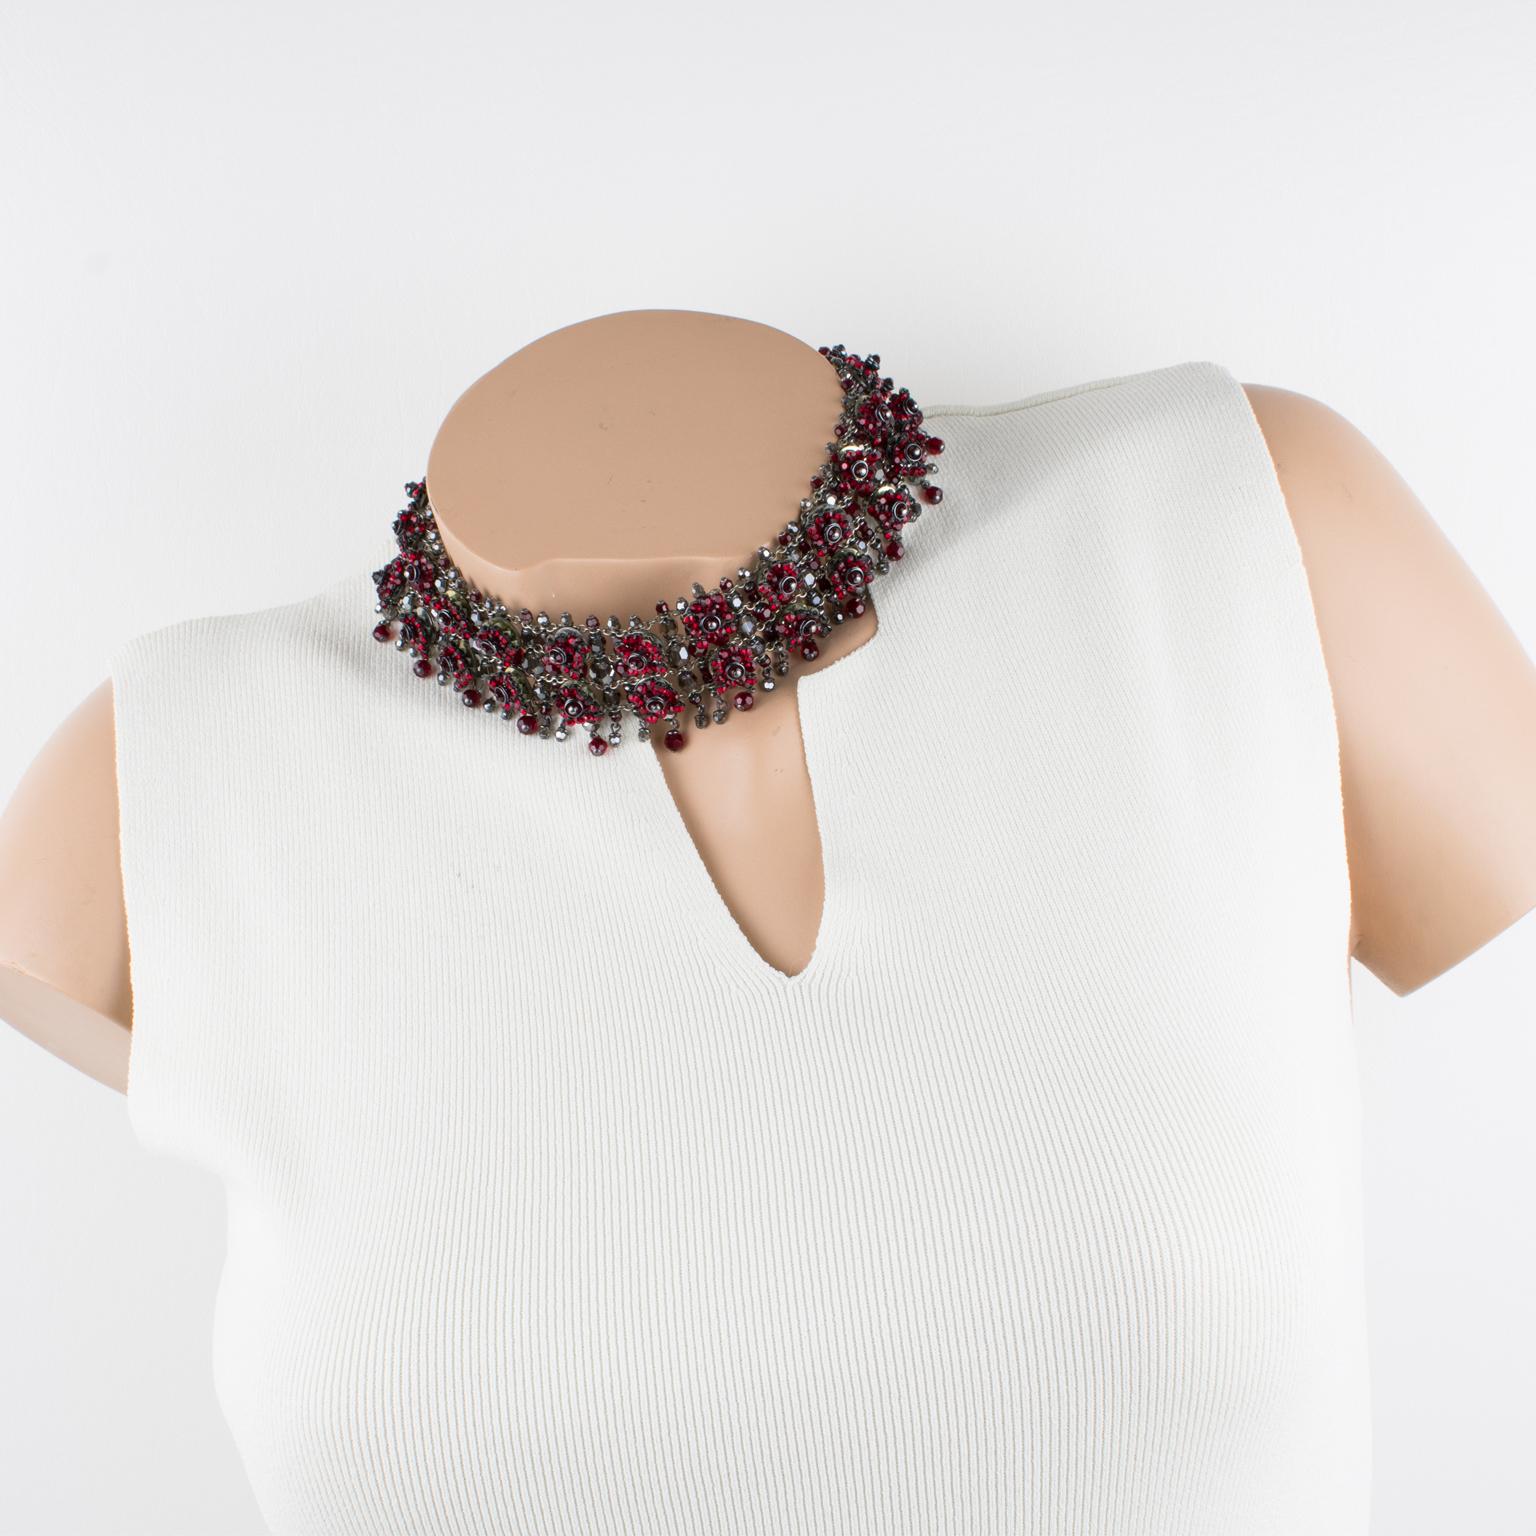 Ce superbe collier ras de cou bijou de couture Daniel Swarovski Paris présente une forme autour du cou d'inspiration victorienne.  Le tour de cou est composé de chaînes en métal argenté, ornées de strass et de perles à facettes en cristal Swarovski